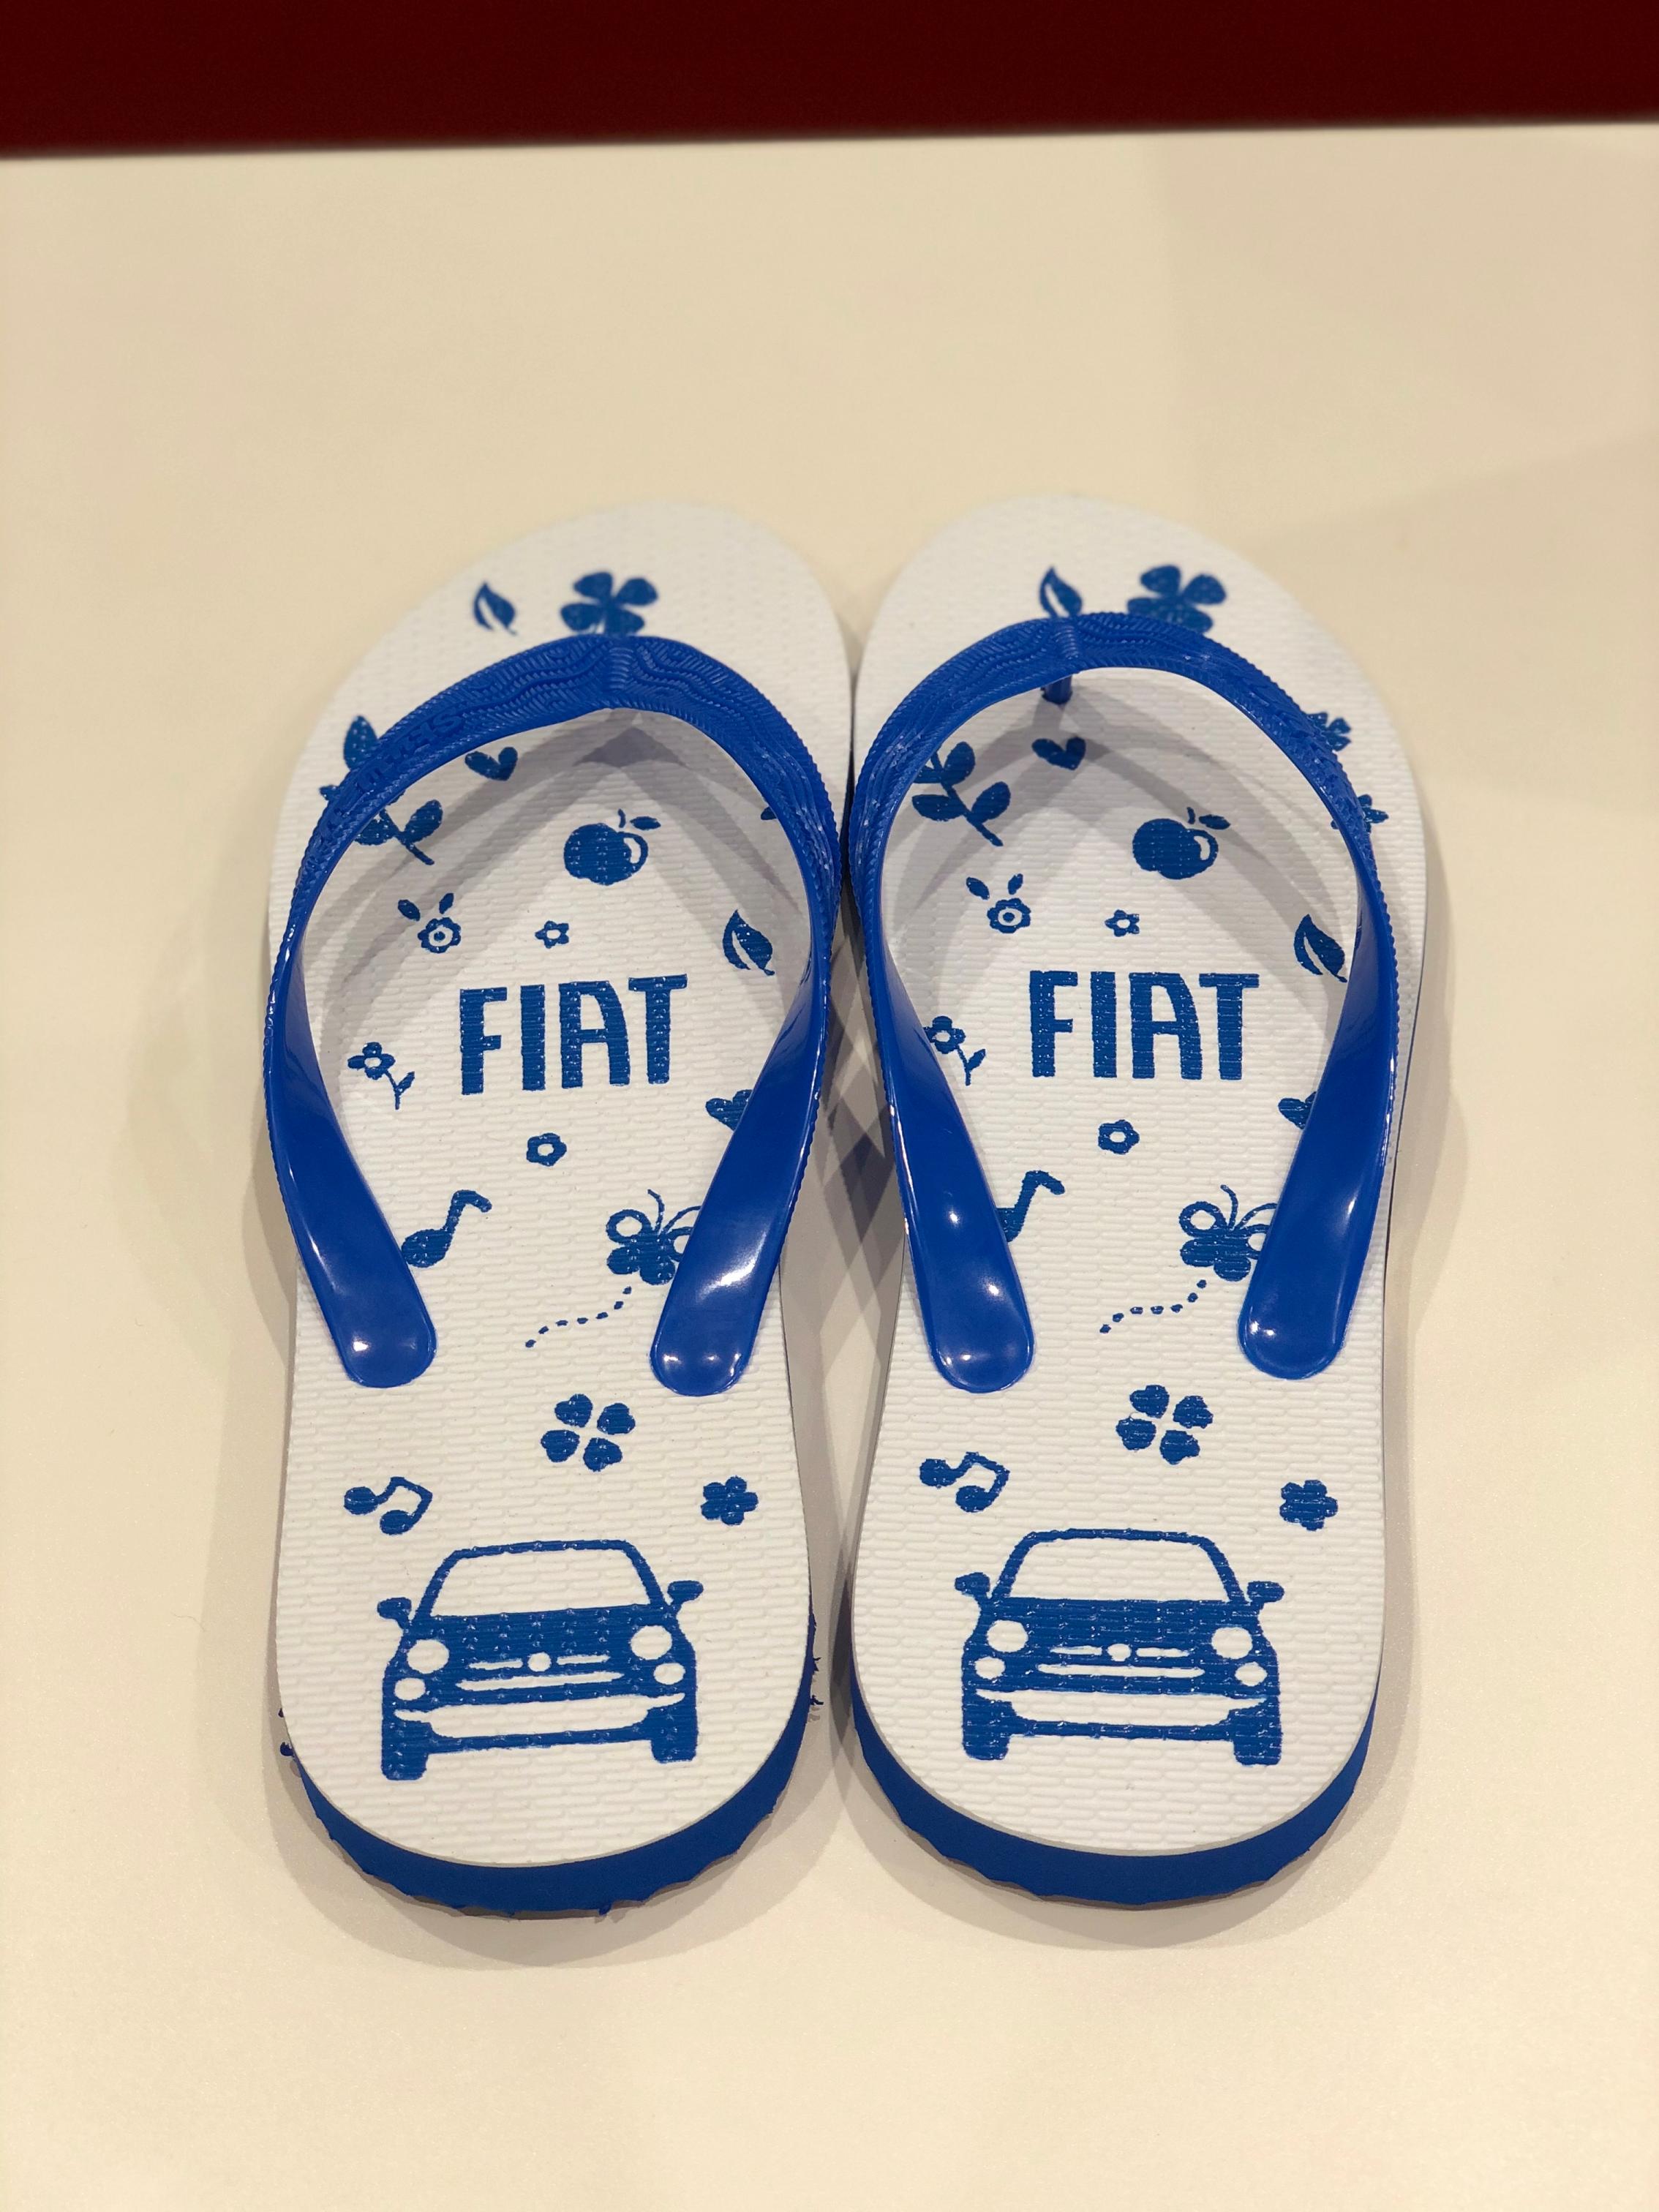 FIAT 500 Sandals